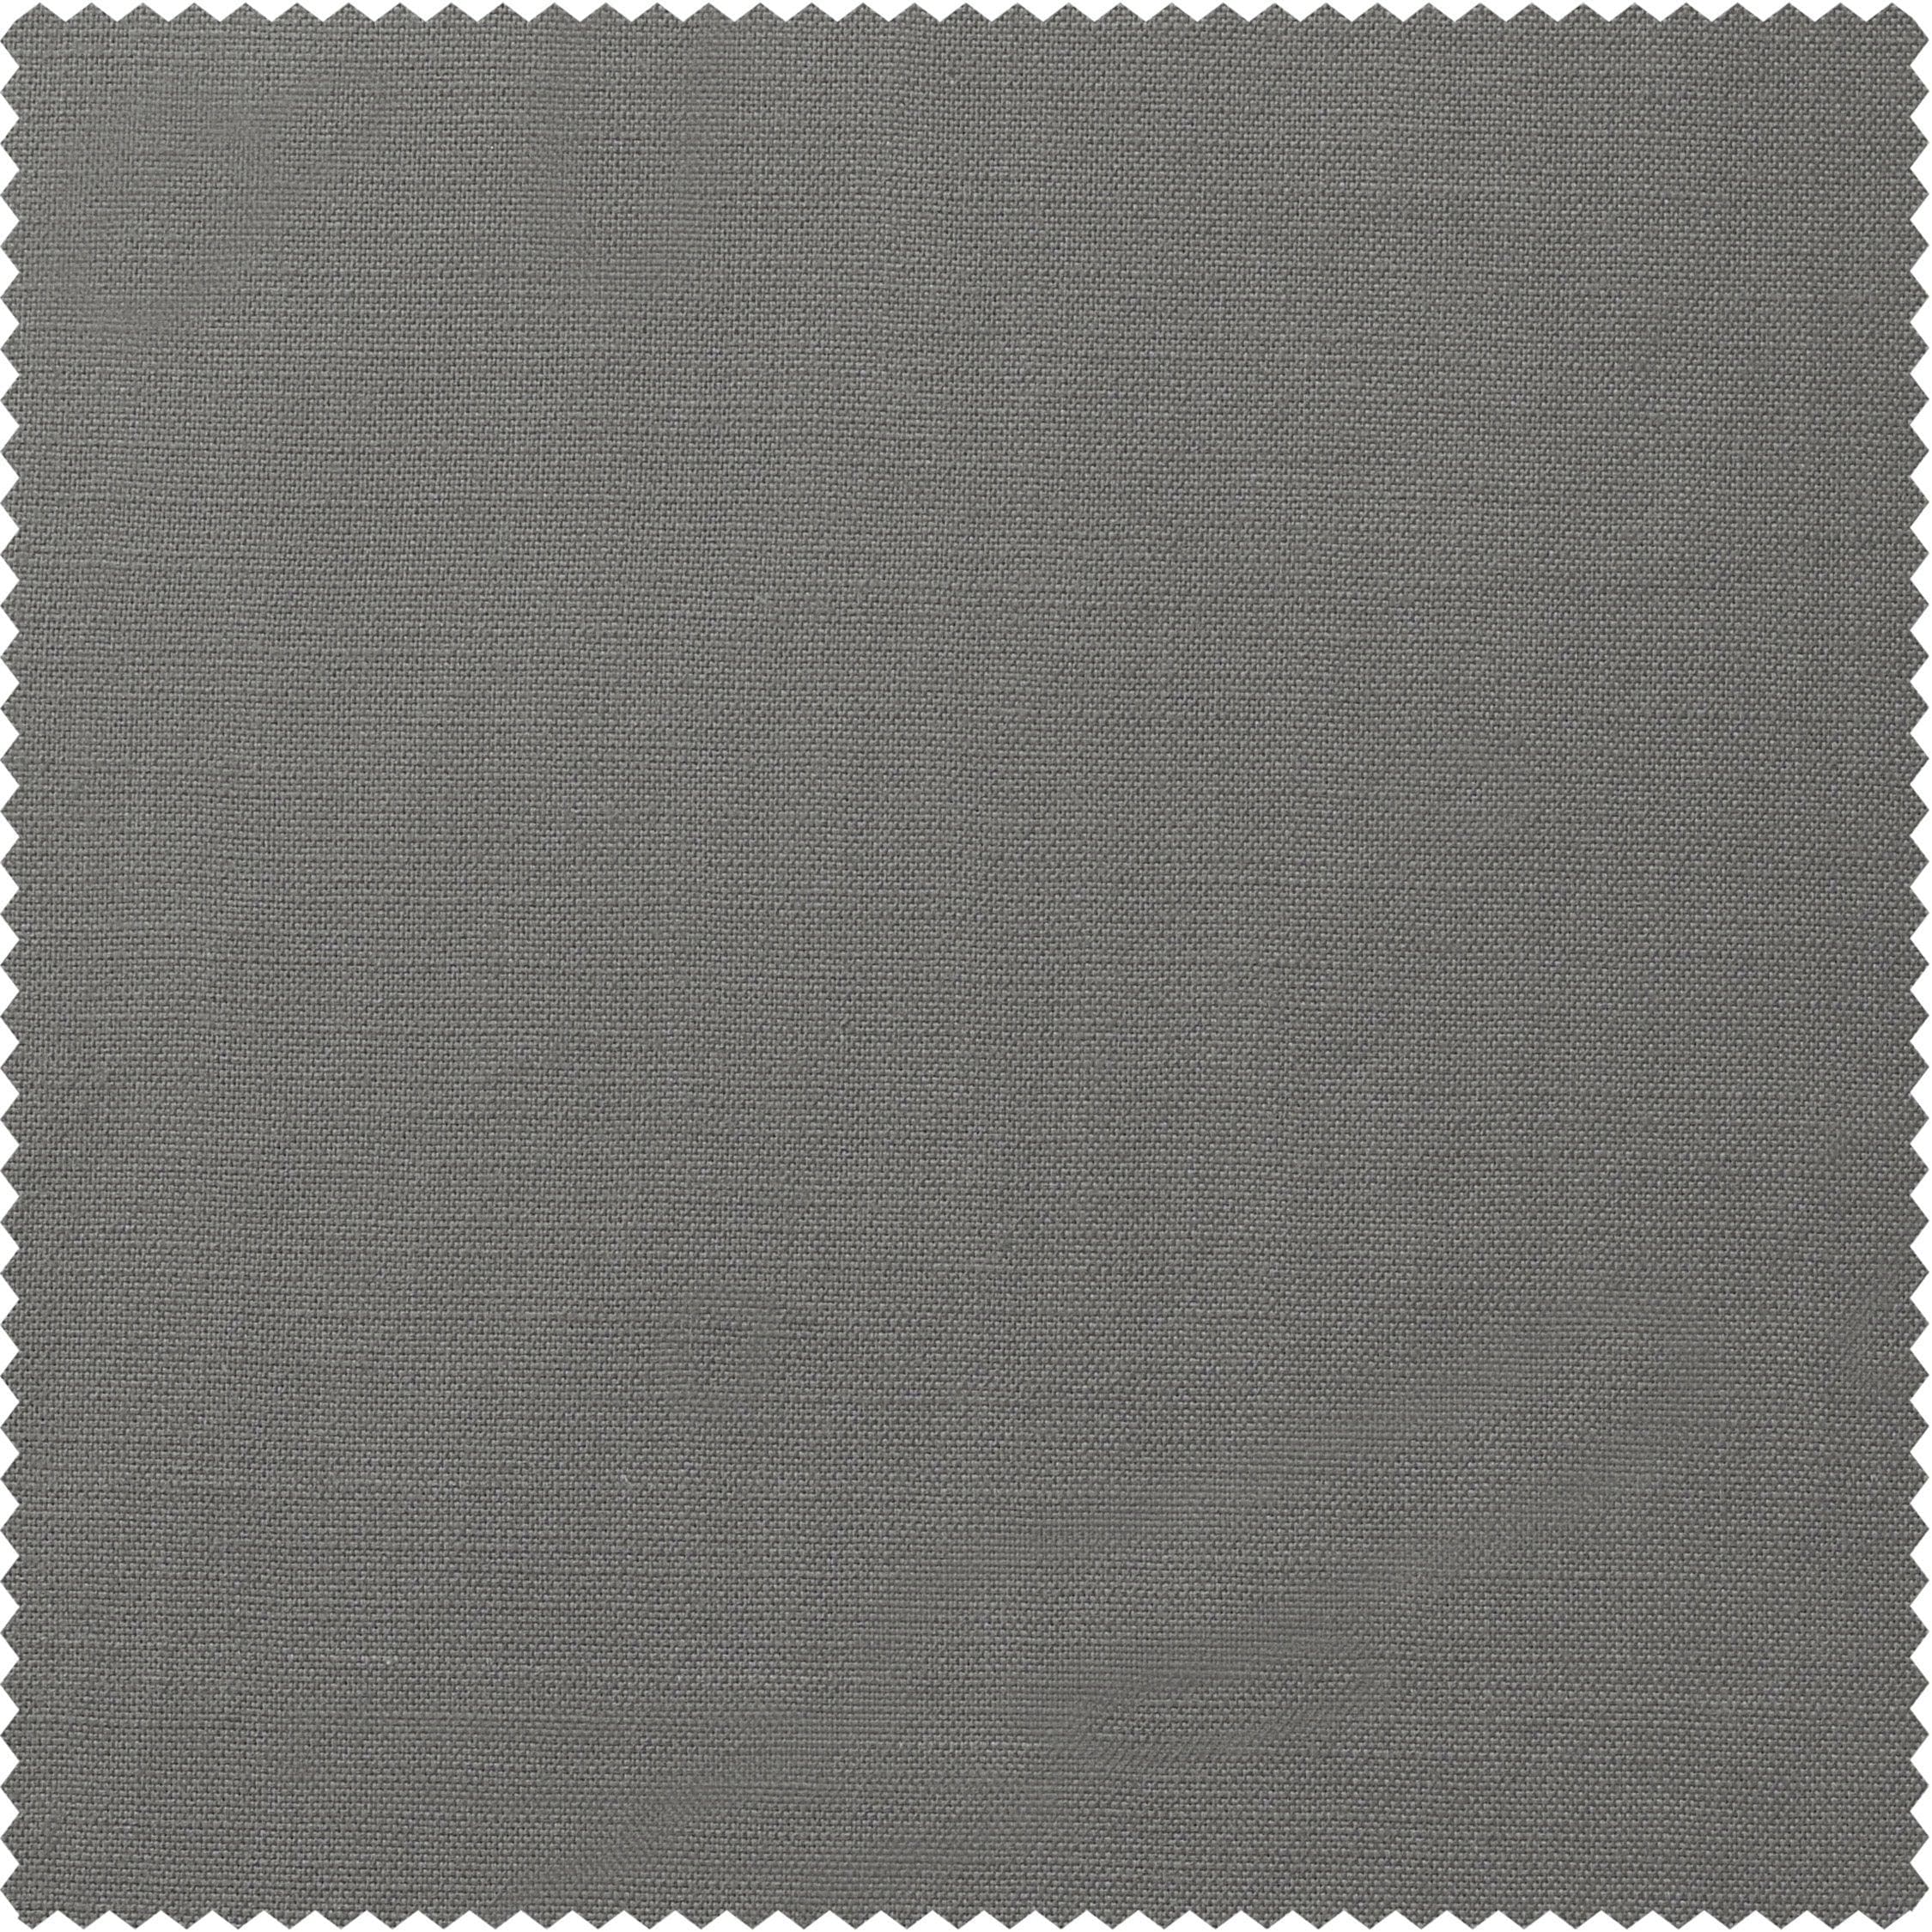 Graphite Grey Textured Cotton Linen Weave Swatch